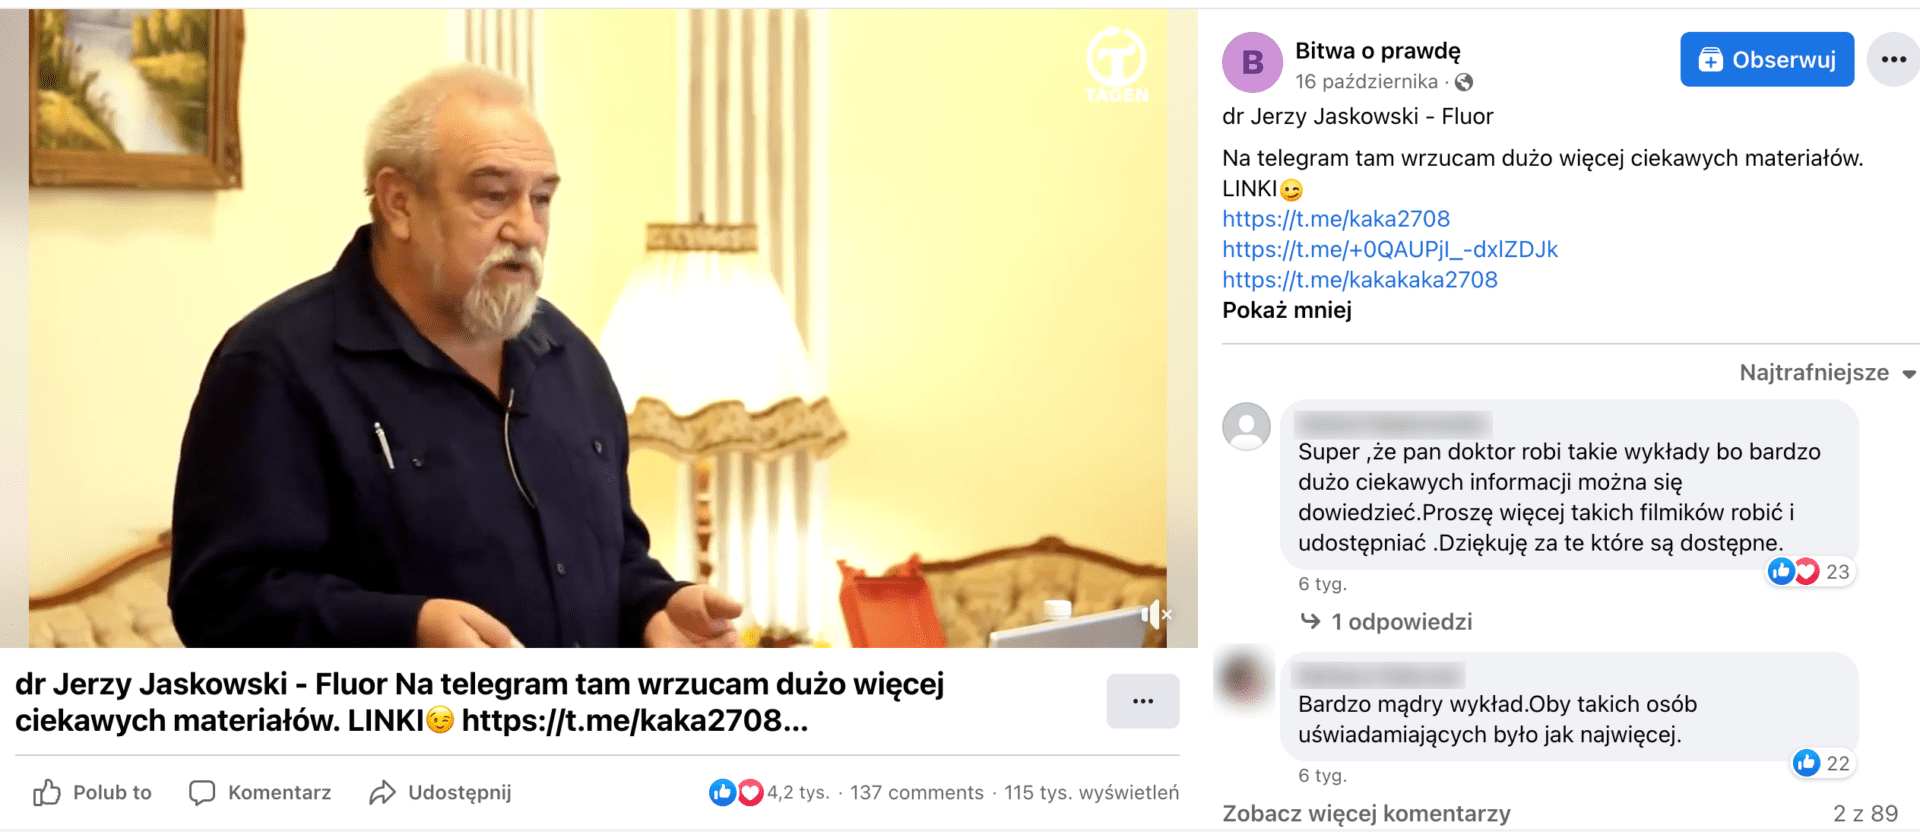 Zrzut ekranu posta na Facebooku. W kadrze filmu znajduje się dr Jaśkowski, starszy mężczyzna w granatowej koszuli z siwym zarostem na tle żółtej ściany z obrazem i zapalonej lampy.